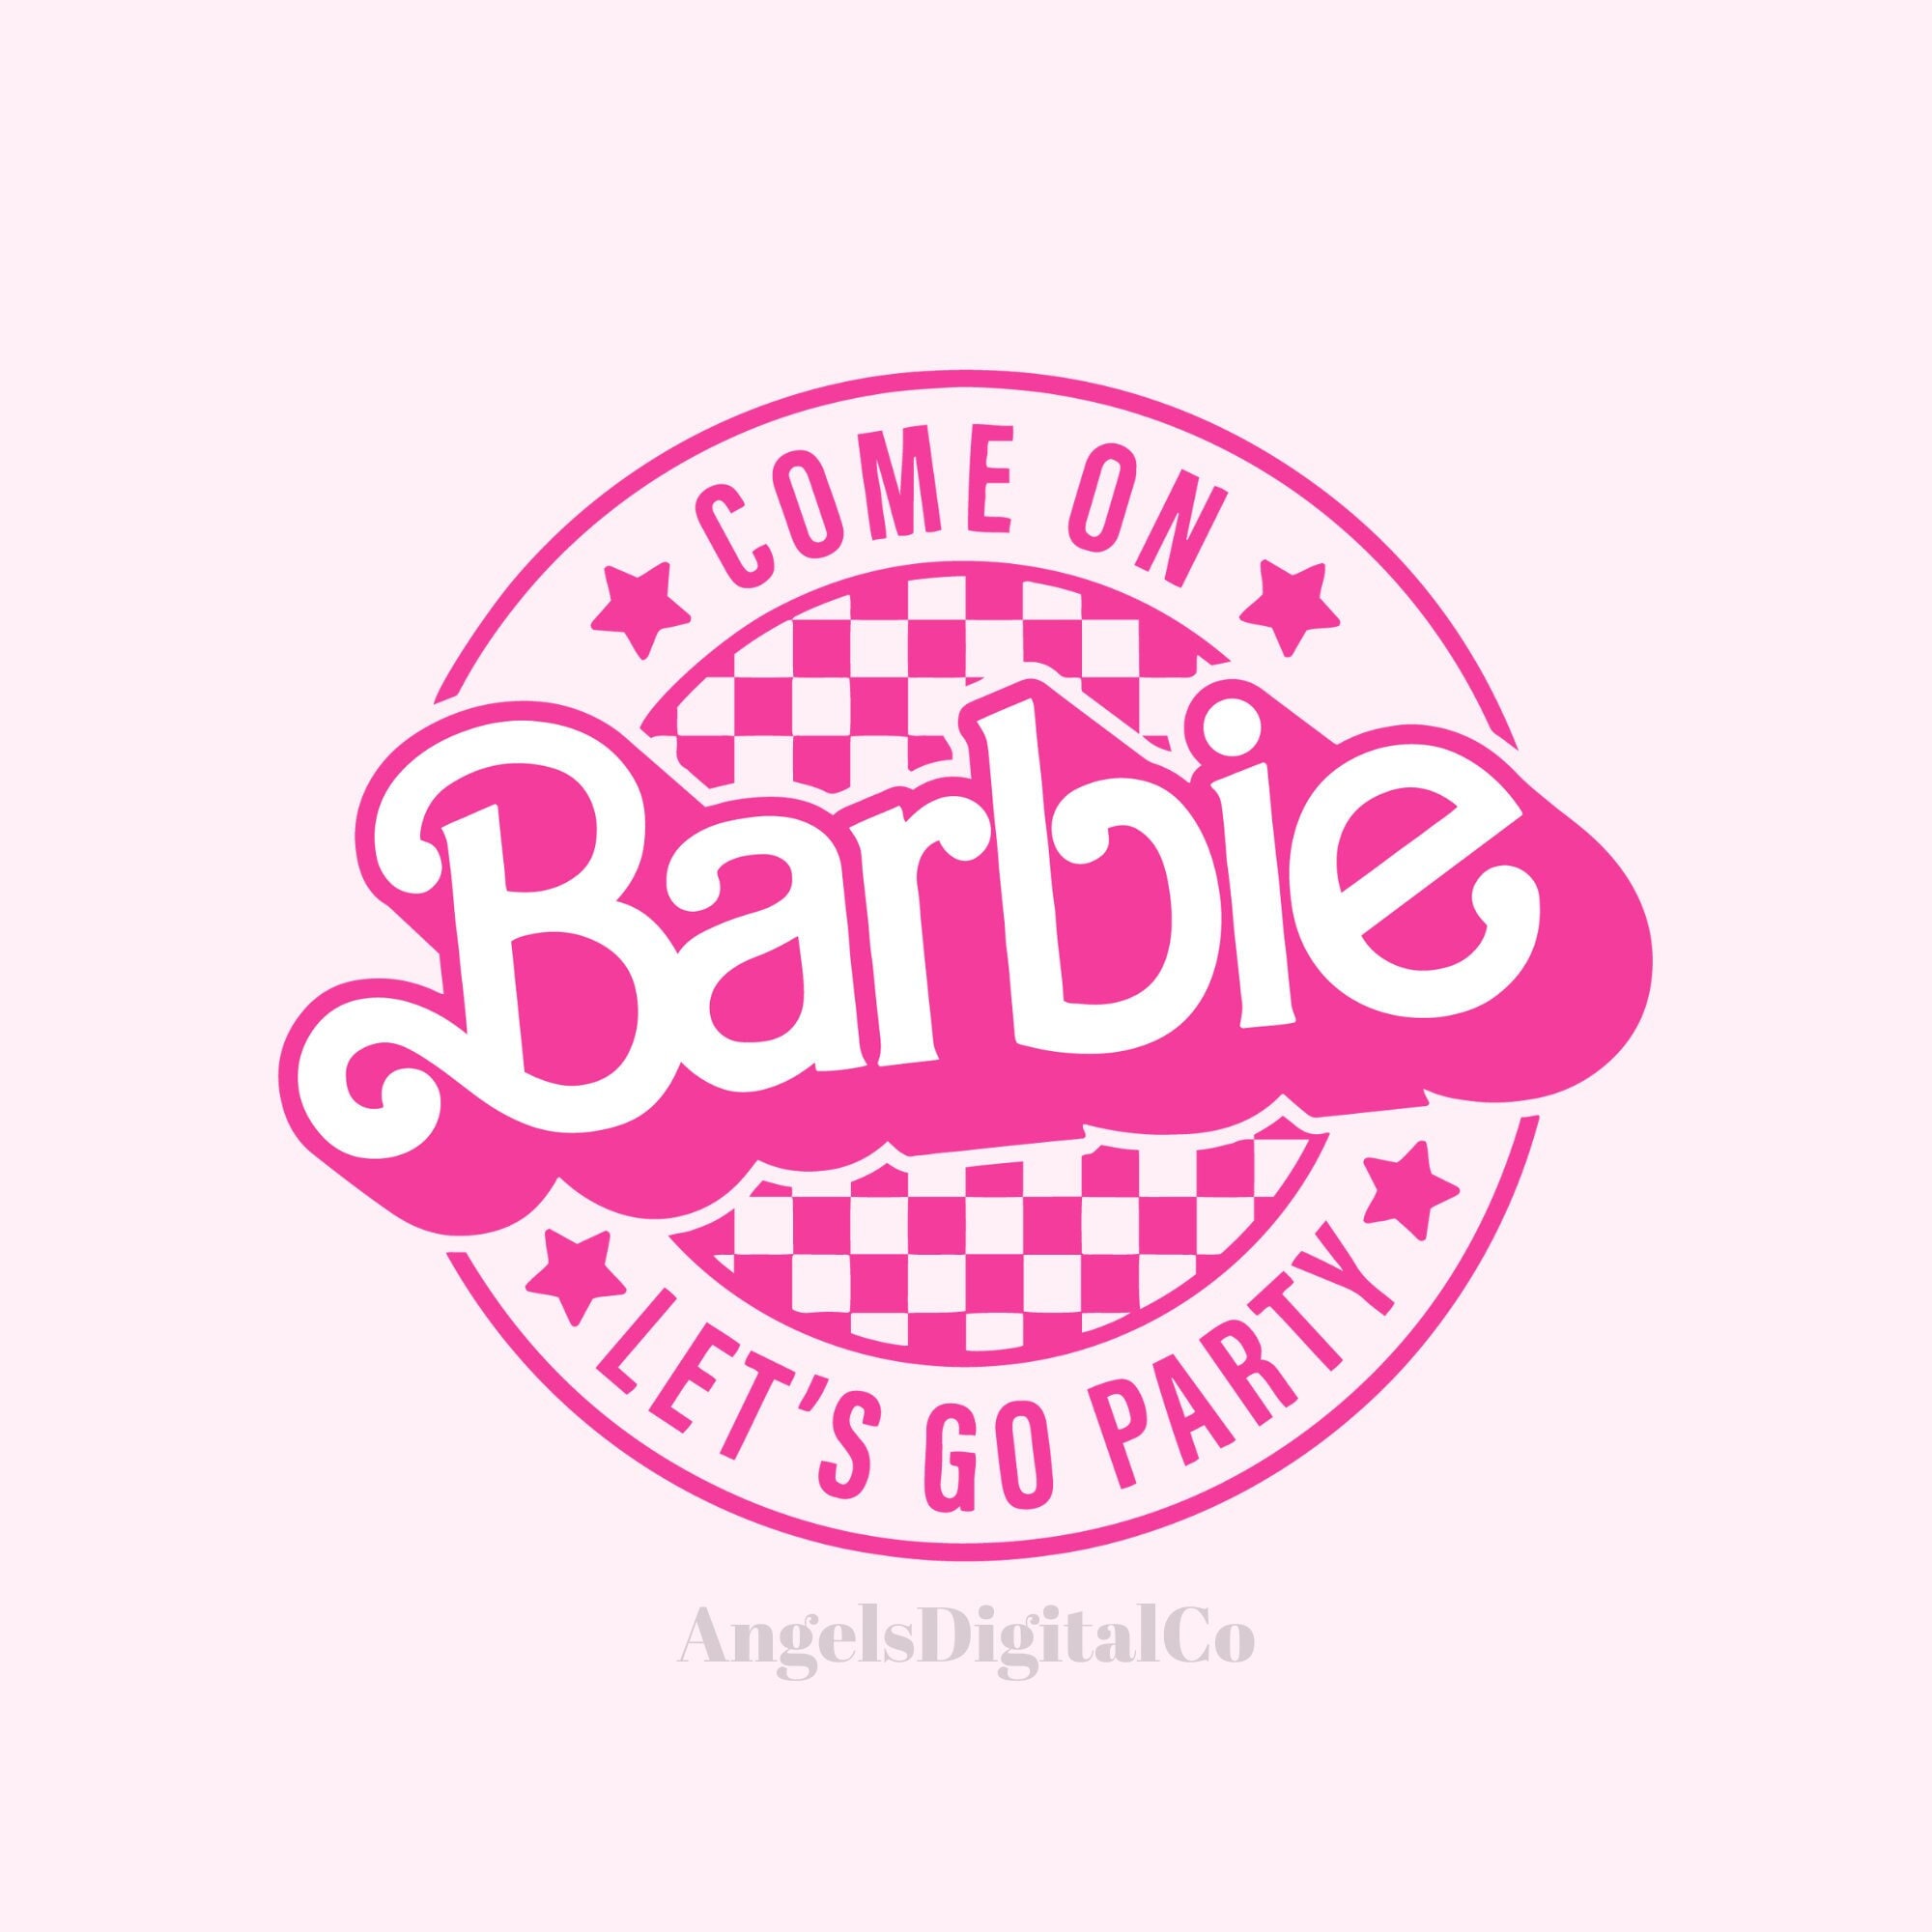 Barbie Halloween SVG, Barbie spider web SVG, spooky Barbie SVG